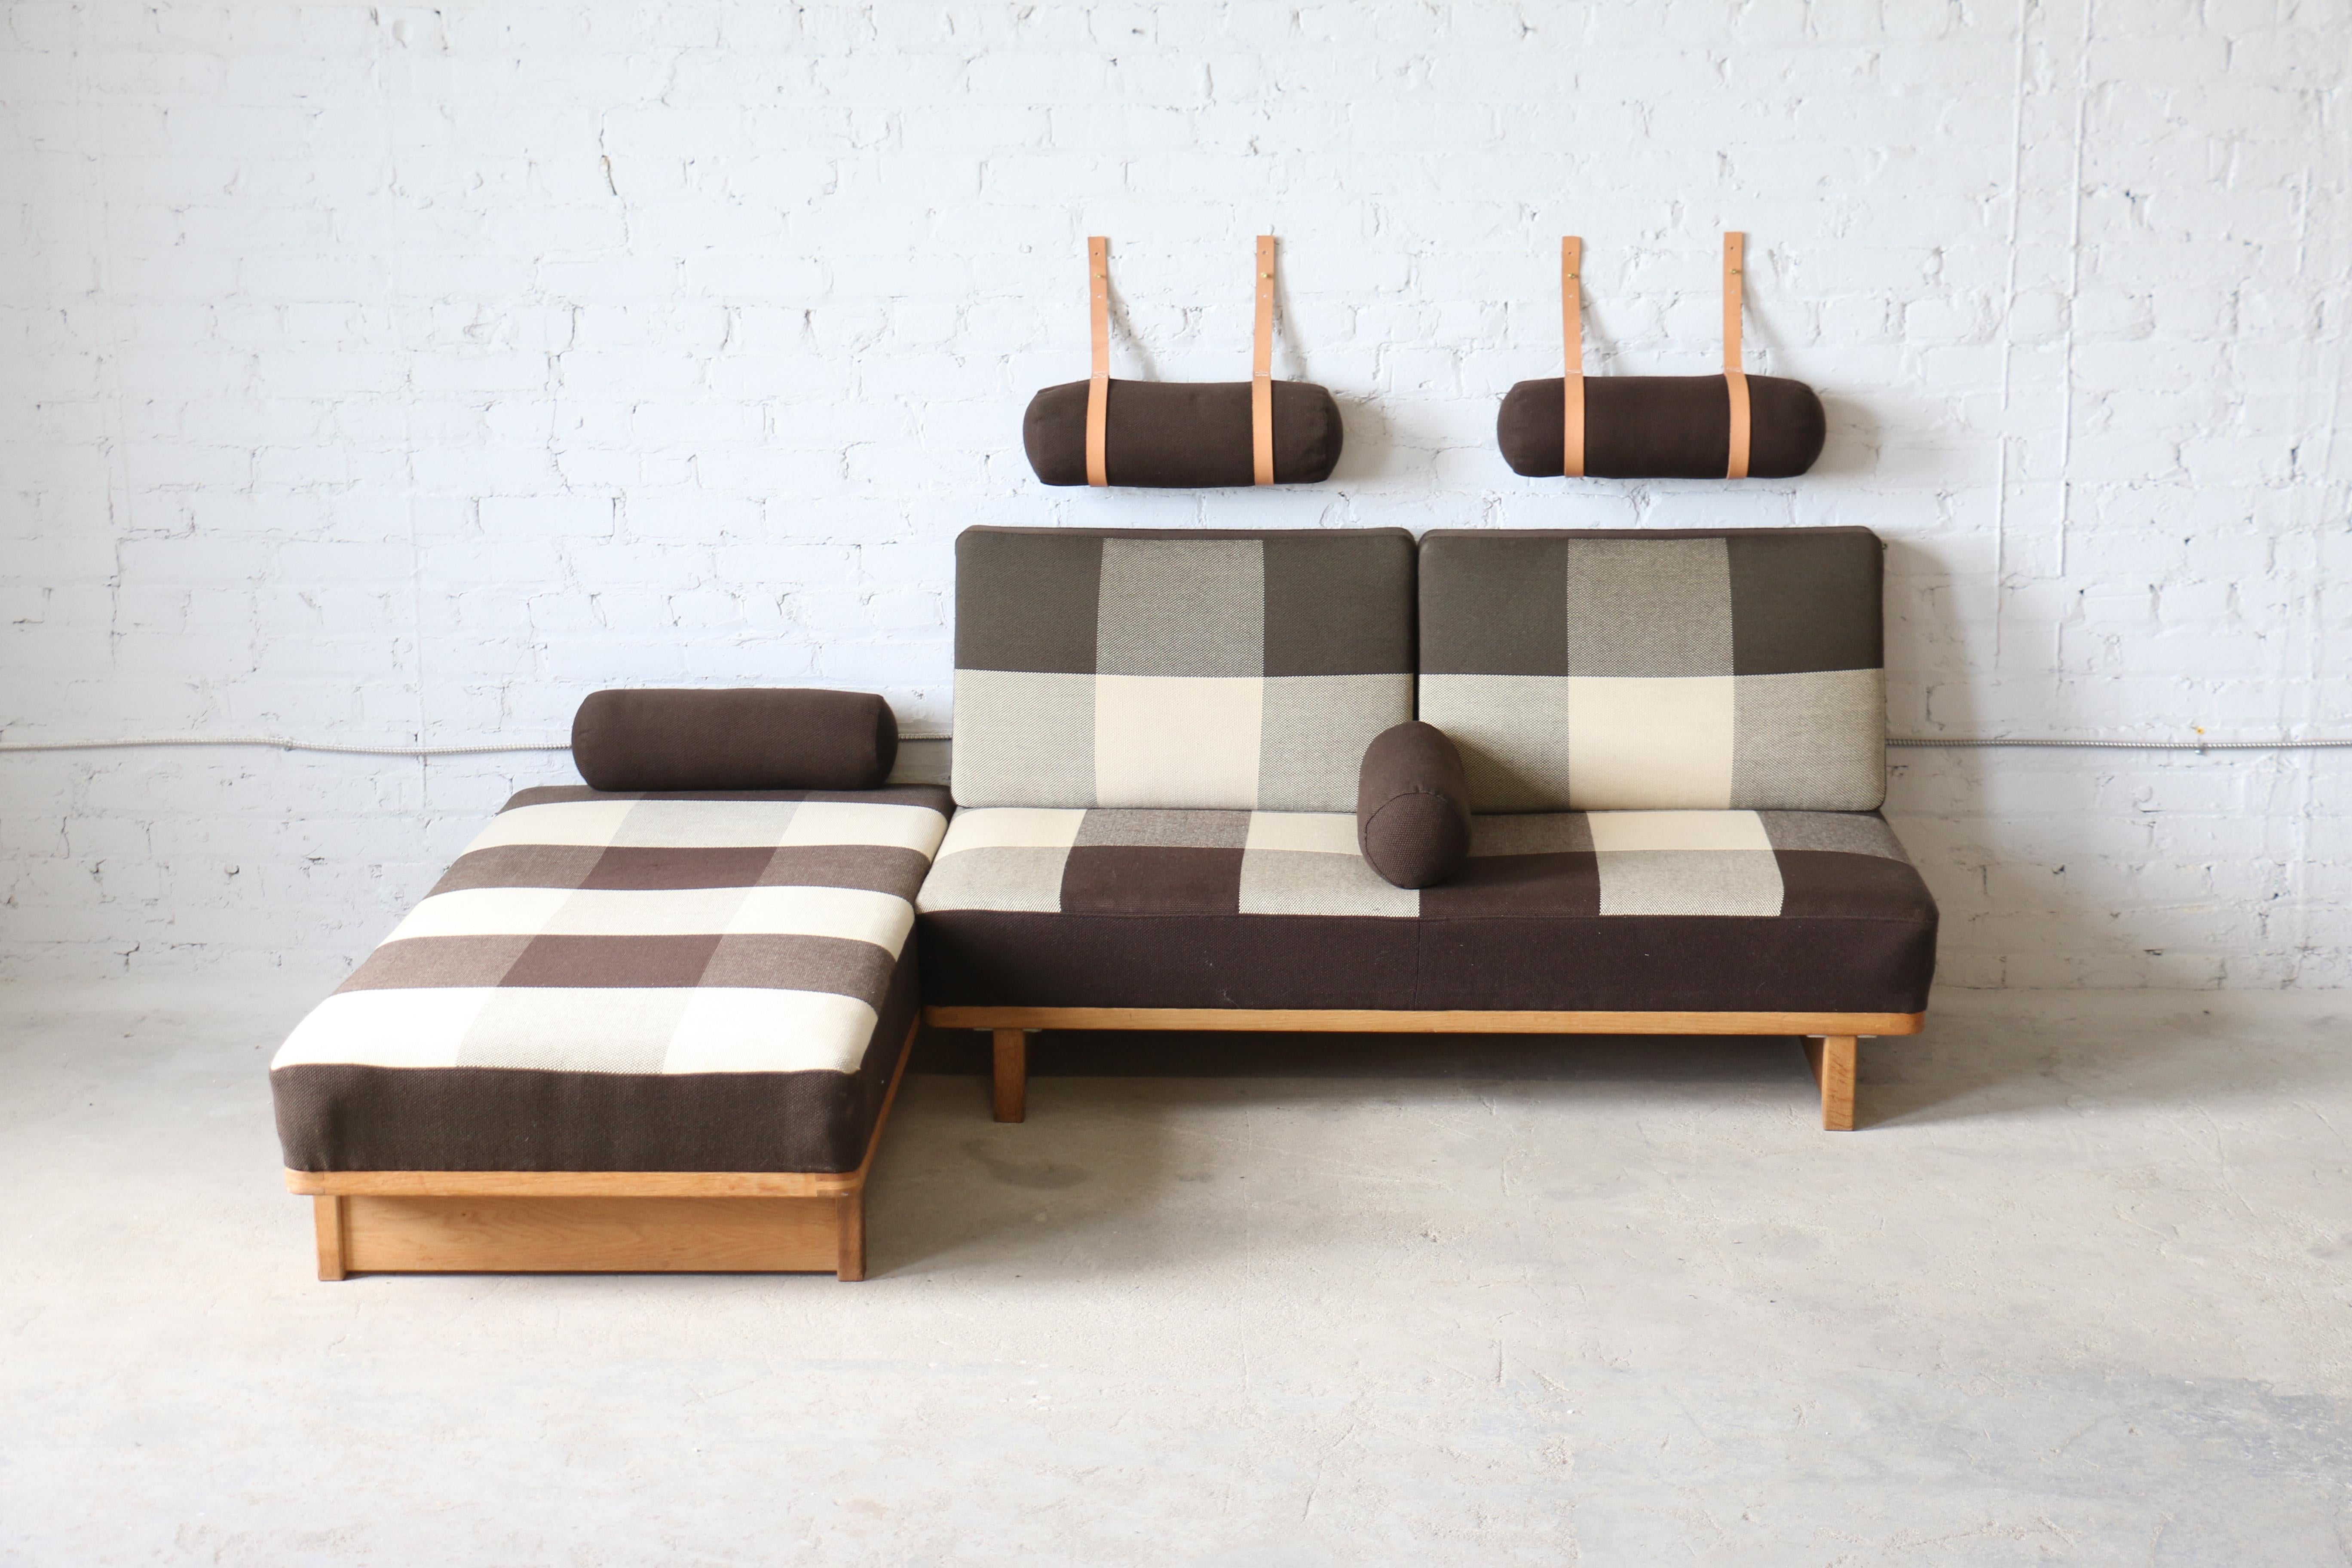 Une paire rare de canapés/lits de jour conçus par Børge Mogensen pour Fredericia A/S. Conçu à l'origine dans une version plus grande pour Erhard Rasmussen, ce superbe ensemble de canapés est vraiment unique. Il est surnommé le canapé 